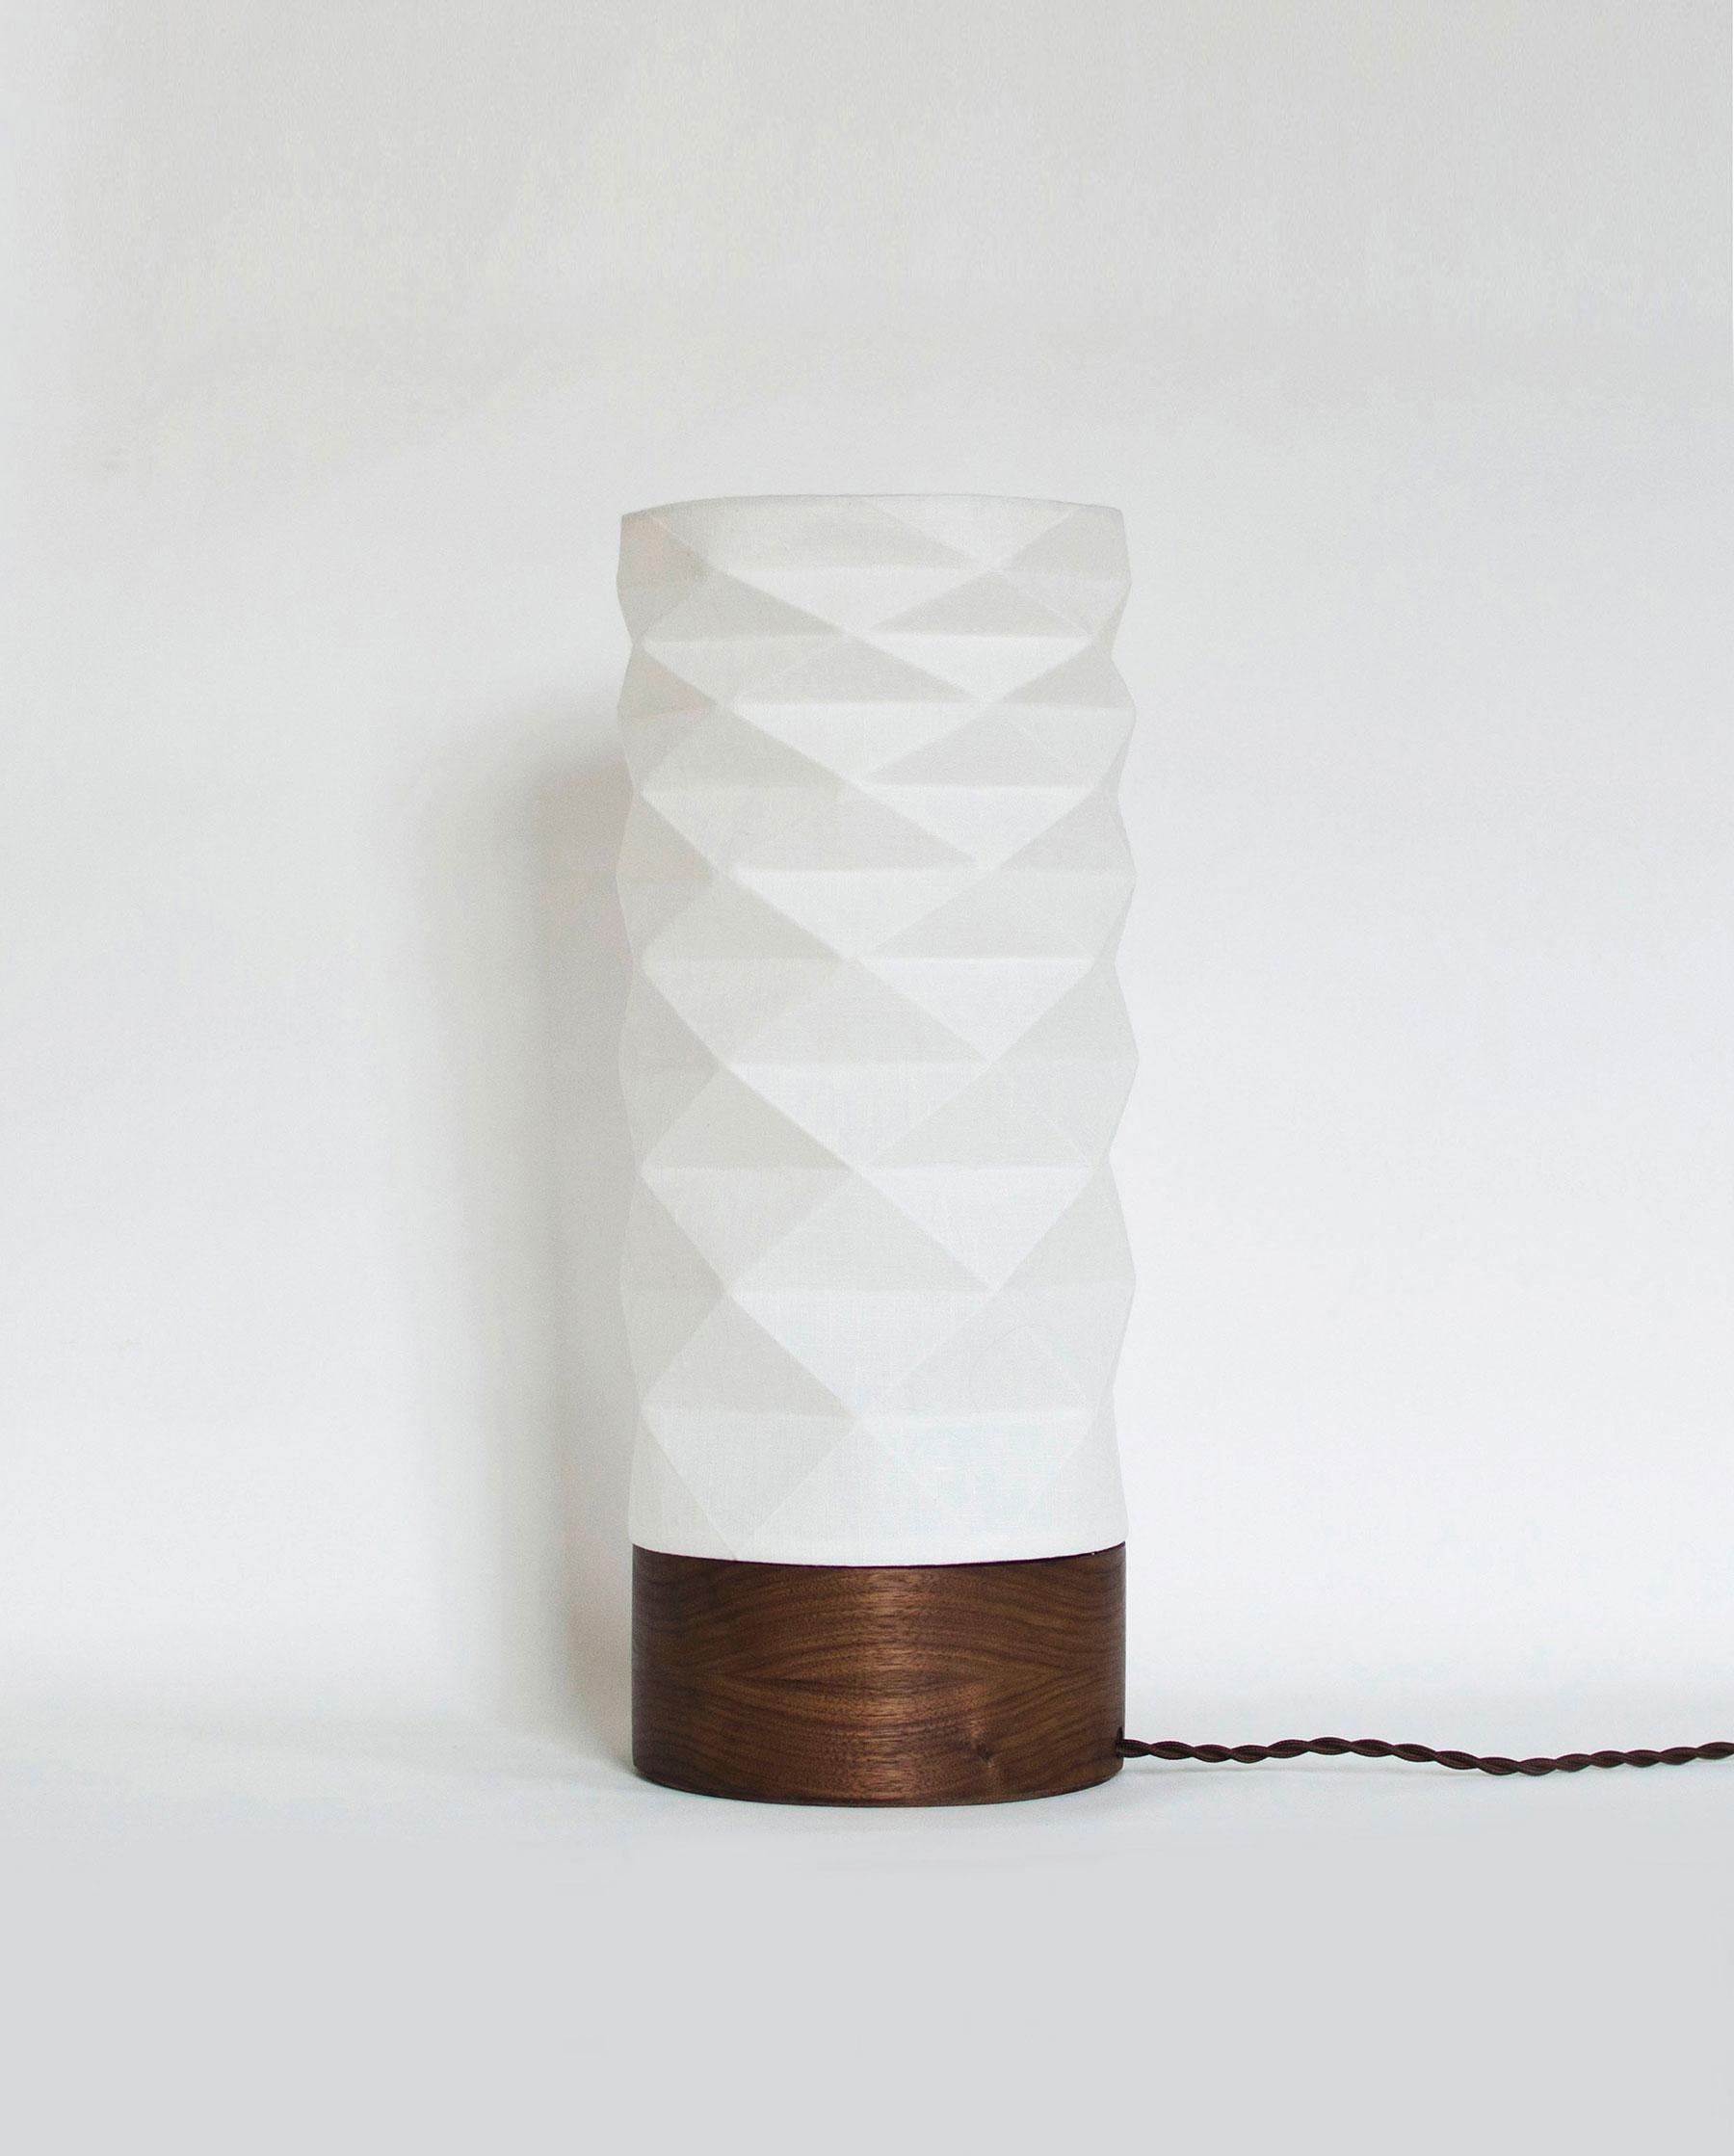 Cette lampe de table artisanale apportera à votre intérieur une pièce fonctionnelle unique et moderne. L'abat-jour inspiré de l'origami est fabriqué en tissu de lin laminé, ce qui permet d'obtenir une lumière ambiante à la fois claire et douce, tout